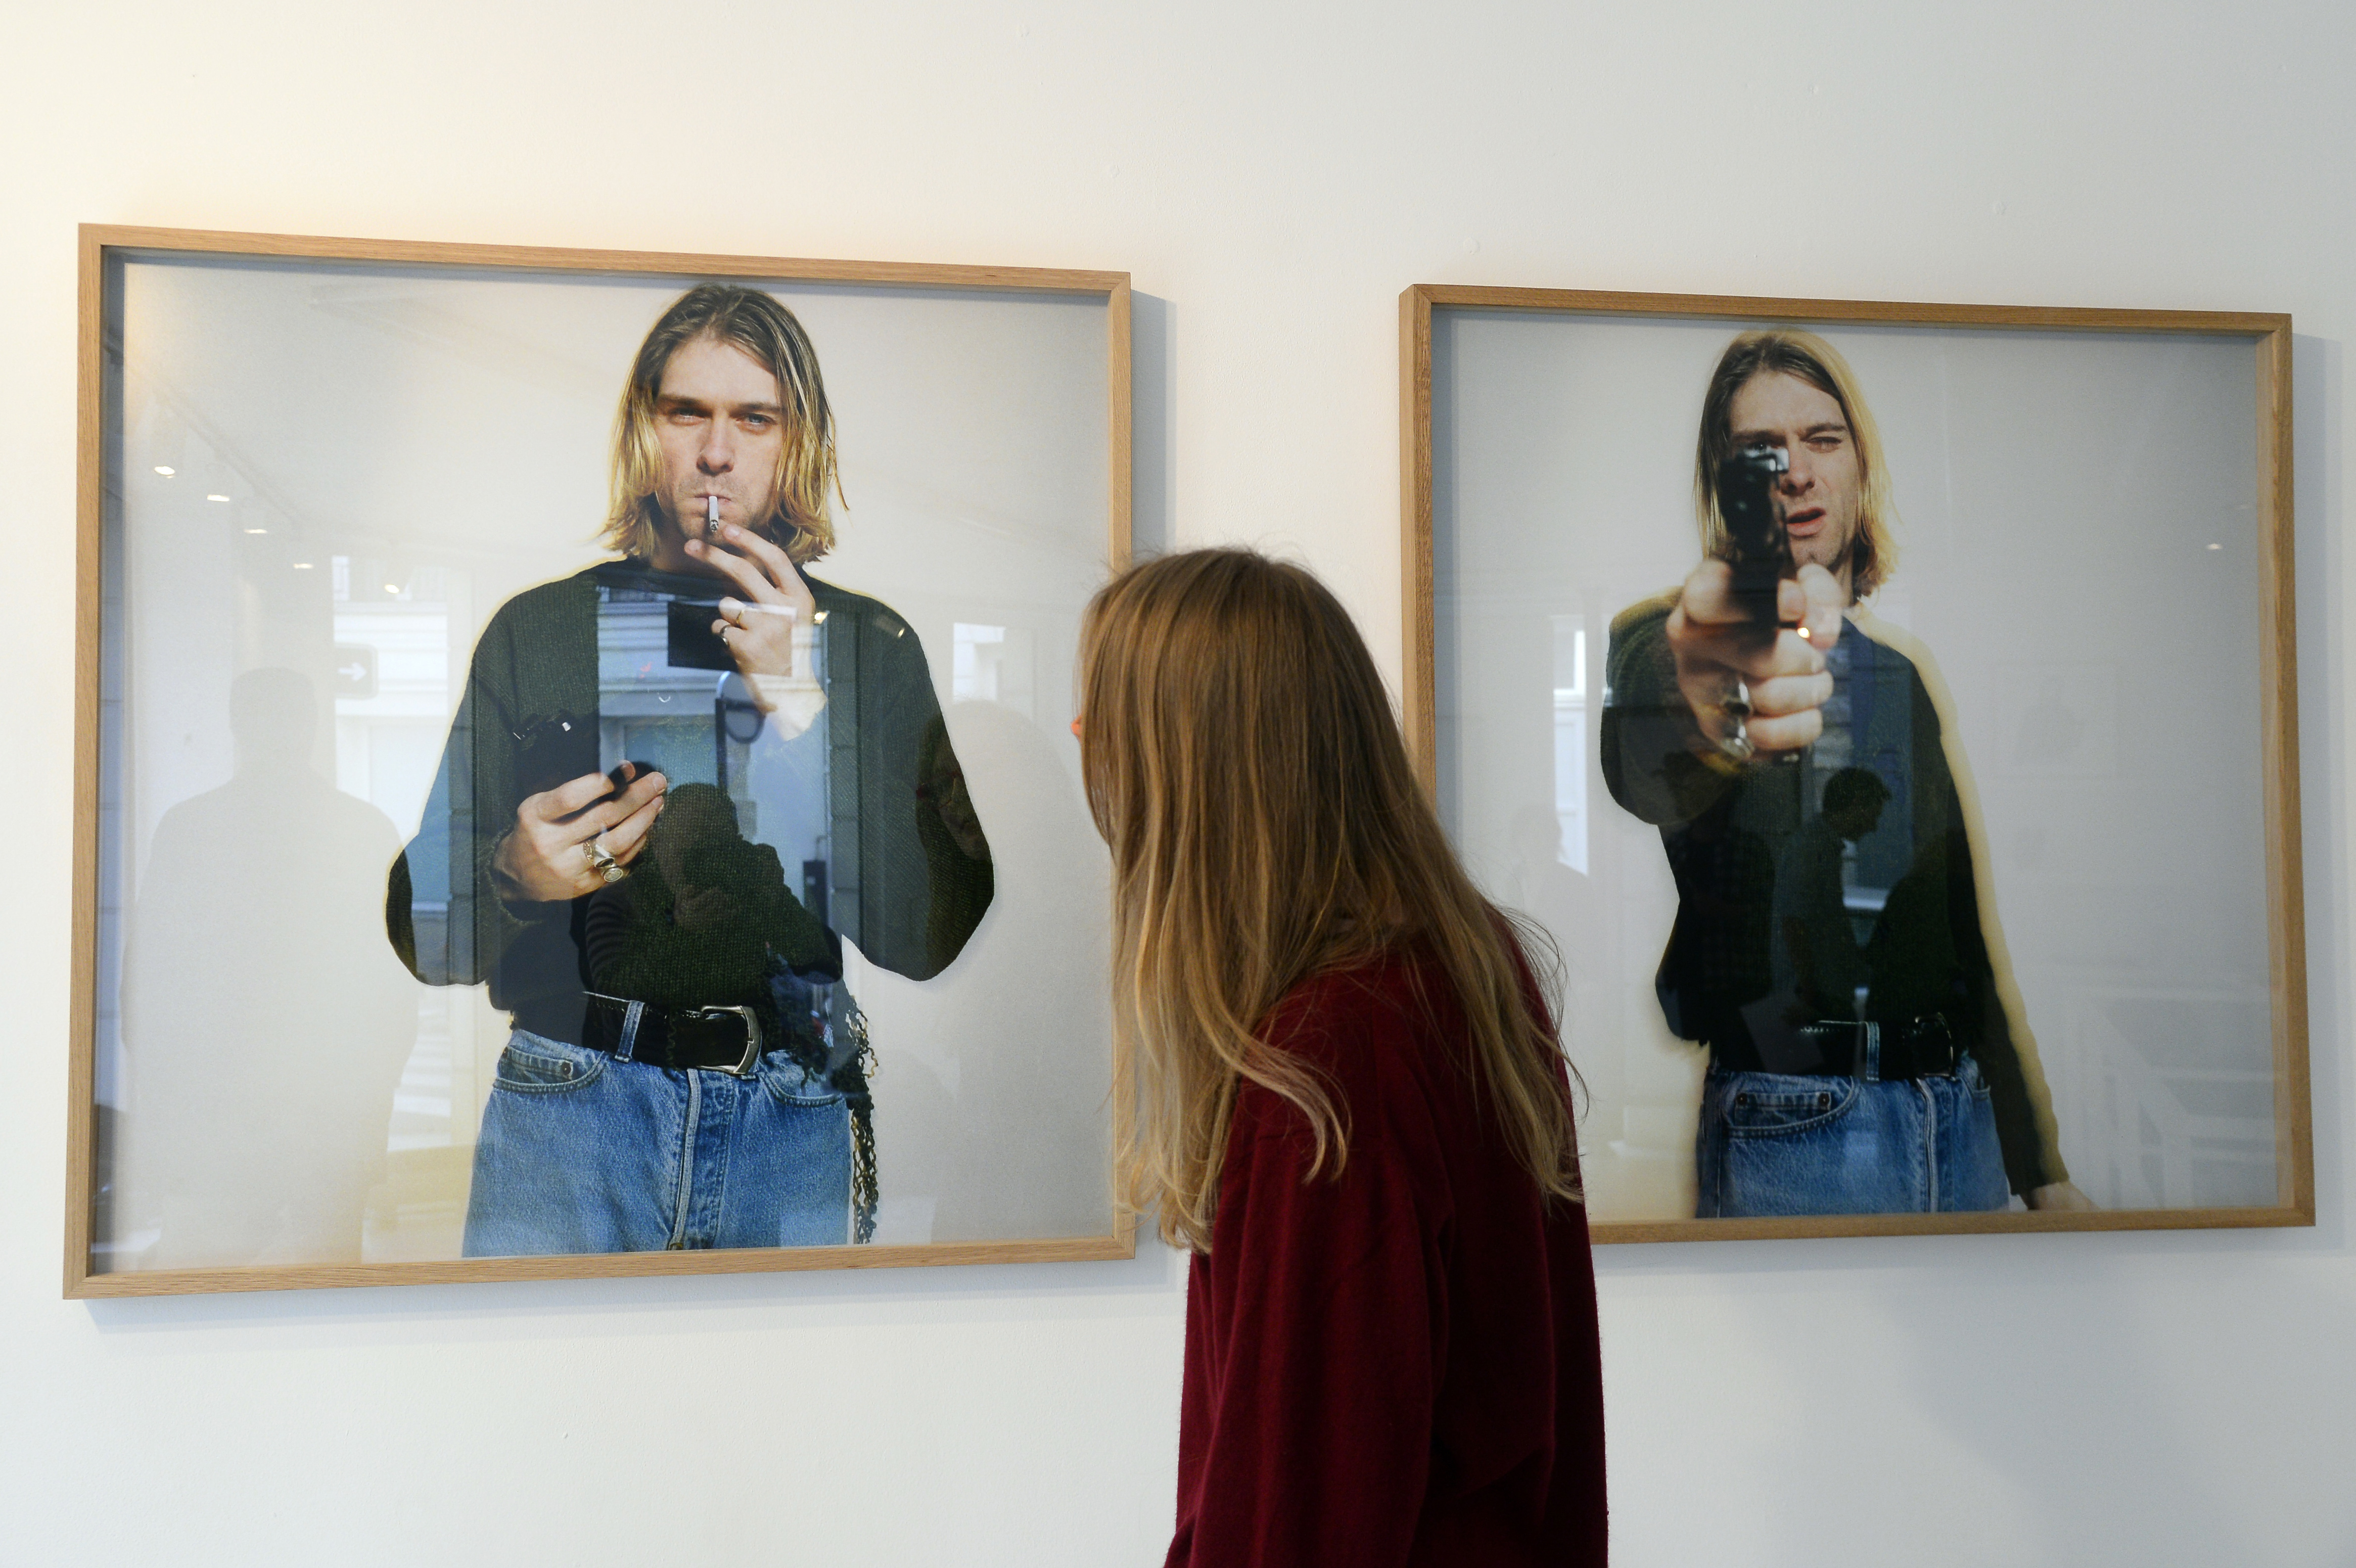 Kurt Cobain halála: nem lehet nyilvánosságra hozni a fotókat